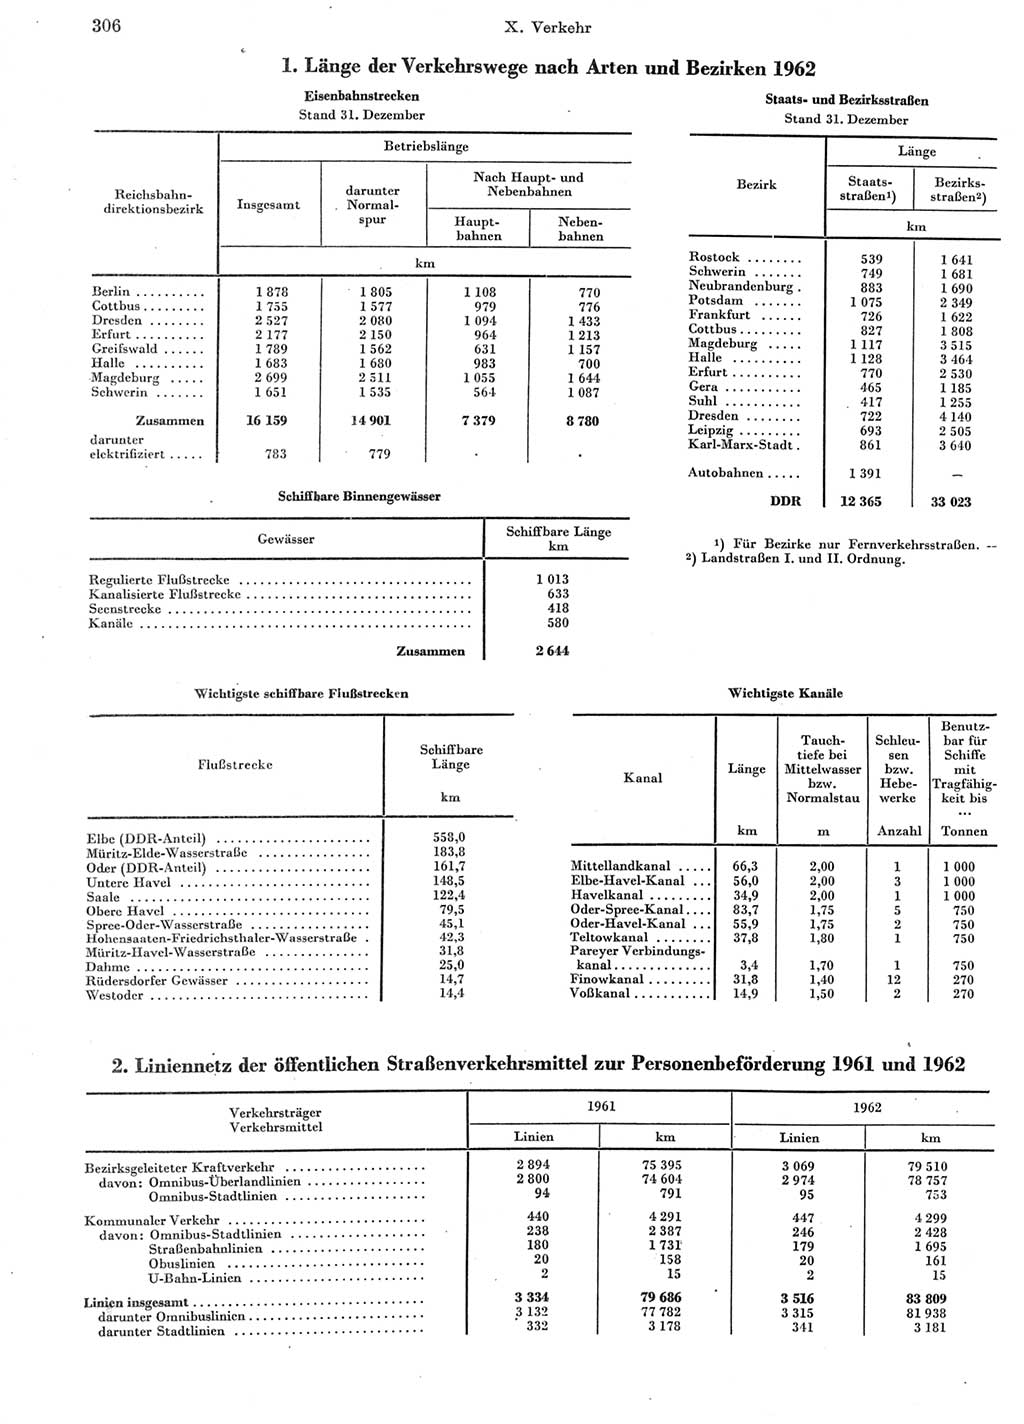 Statistisches Jahrbuch der Deutschen Demokratischen Republik (DDR) 1963, Seite 306 (Stat. Jb. DDR 1963, S. 306)